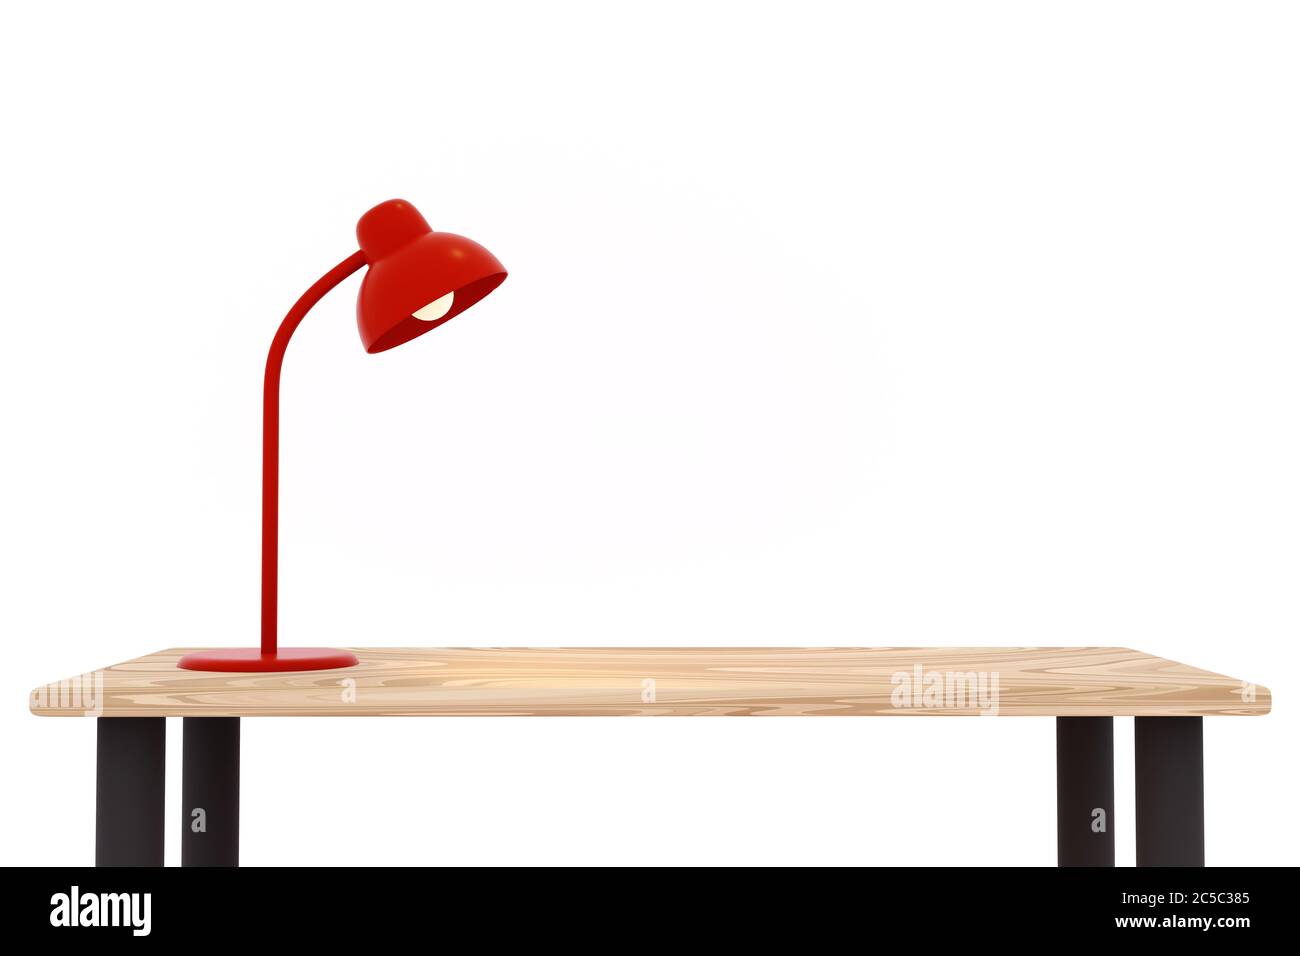 Lampe rouge sur la table en bois dans la salle blanche, illustration 3d. Banque D'Images